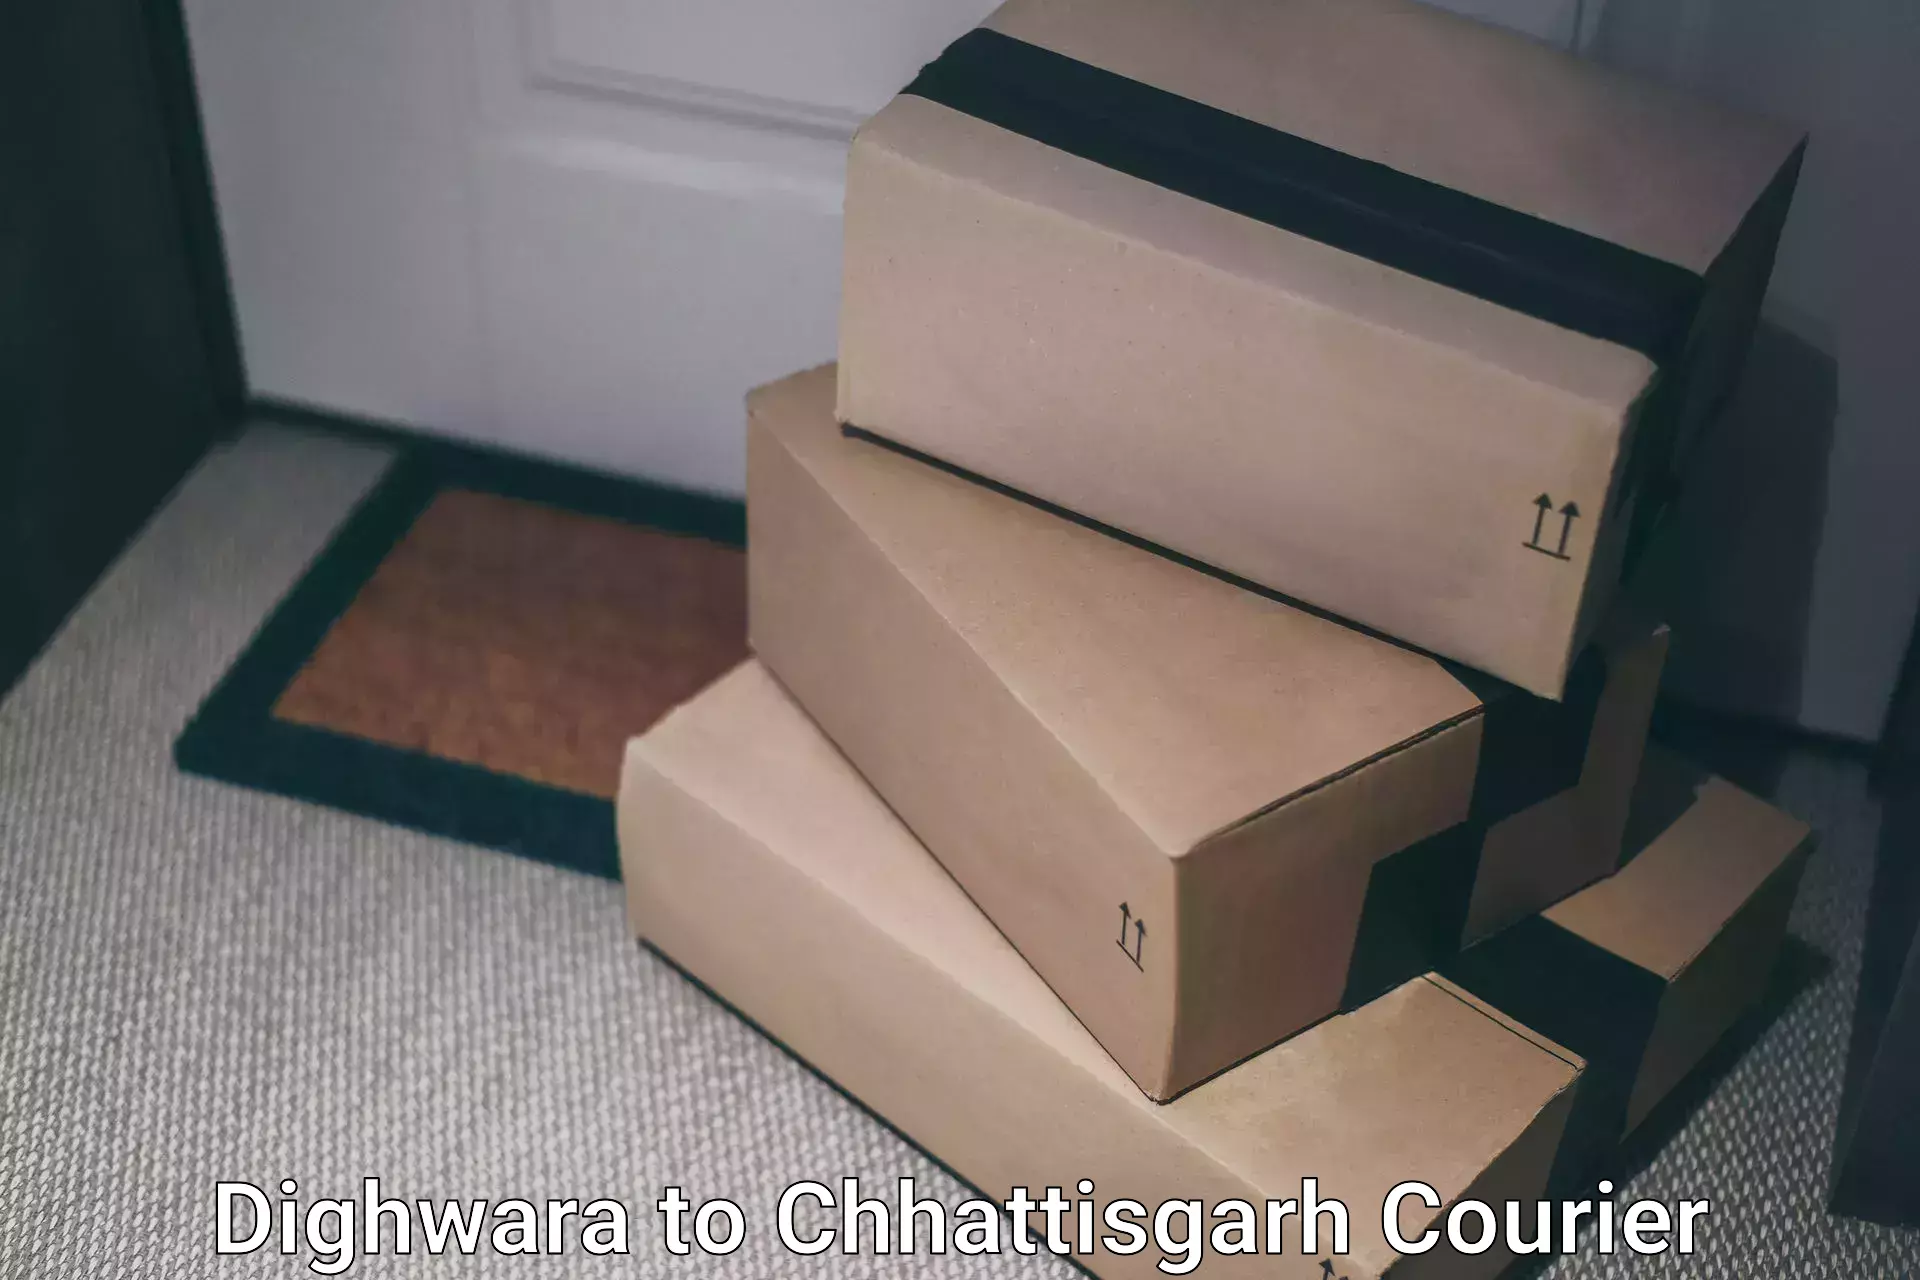 Nationwide delivery network Dighwara to Bijapur Chhattisgarh